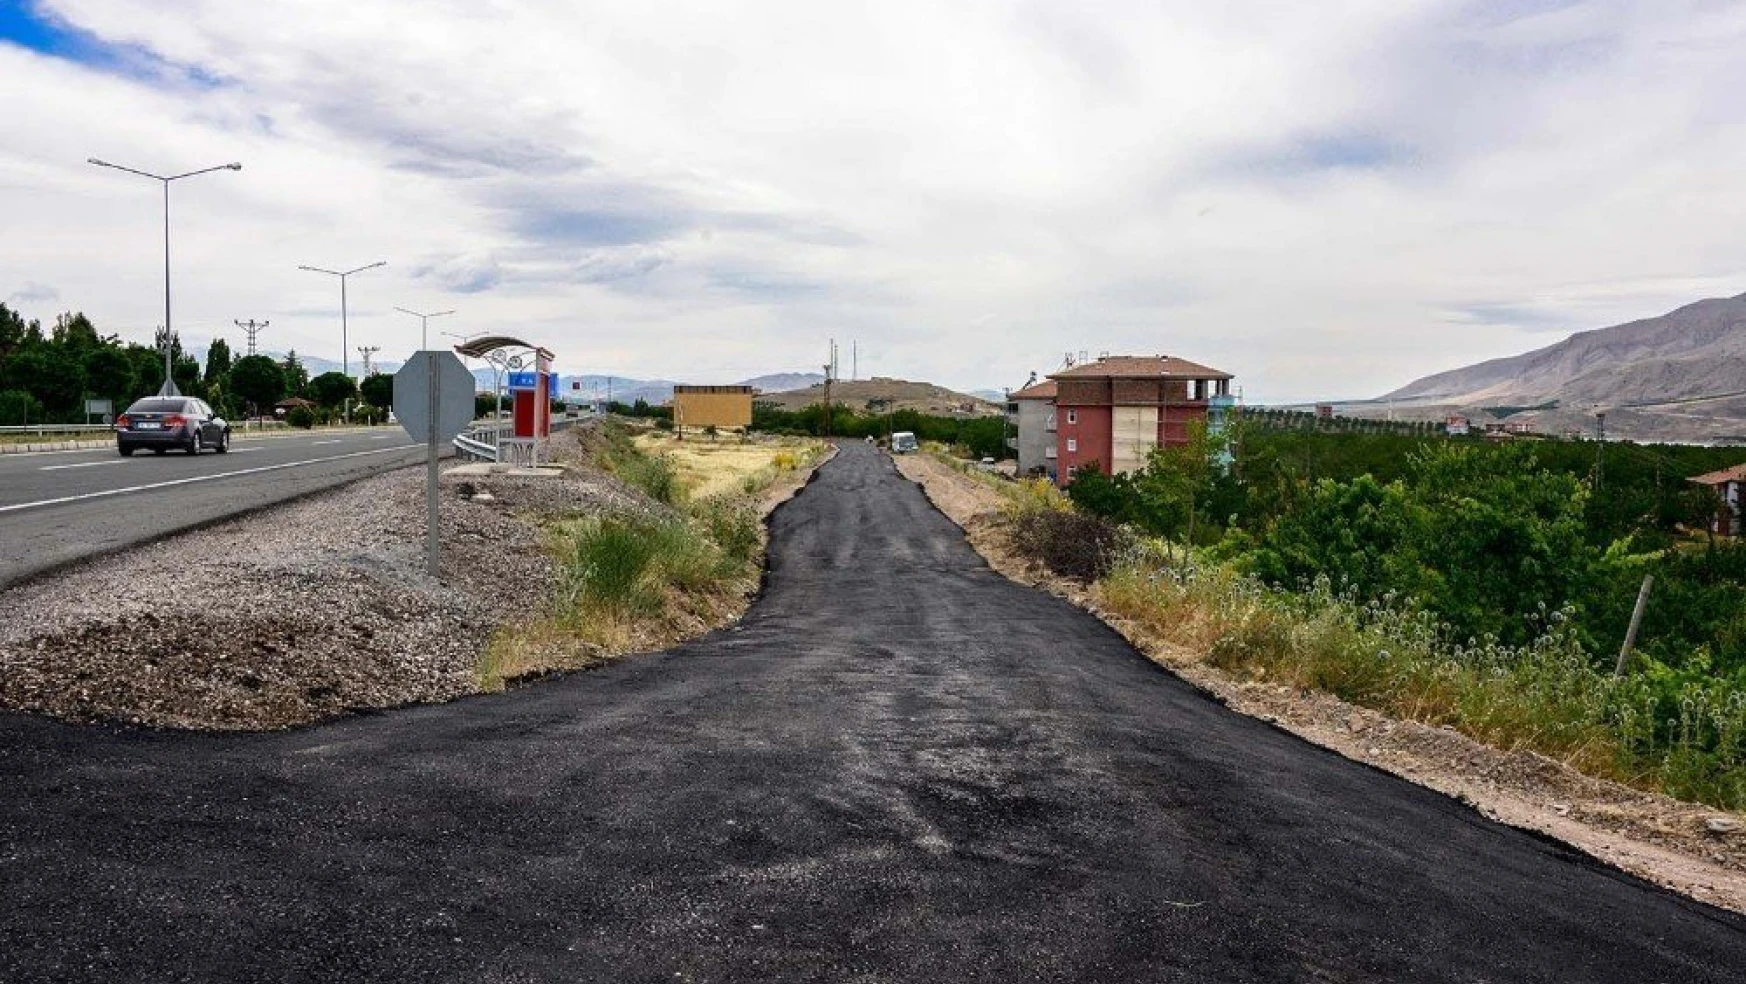 Büyükşehir Belediyesi Kale ilçesine bağlı 4 mahallede sıcak asfalt serimi yaptı